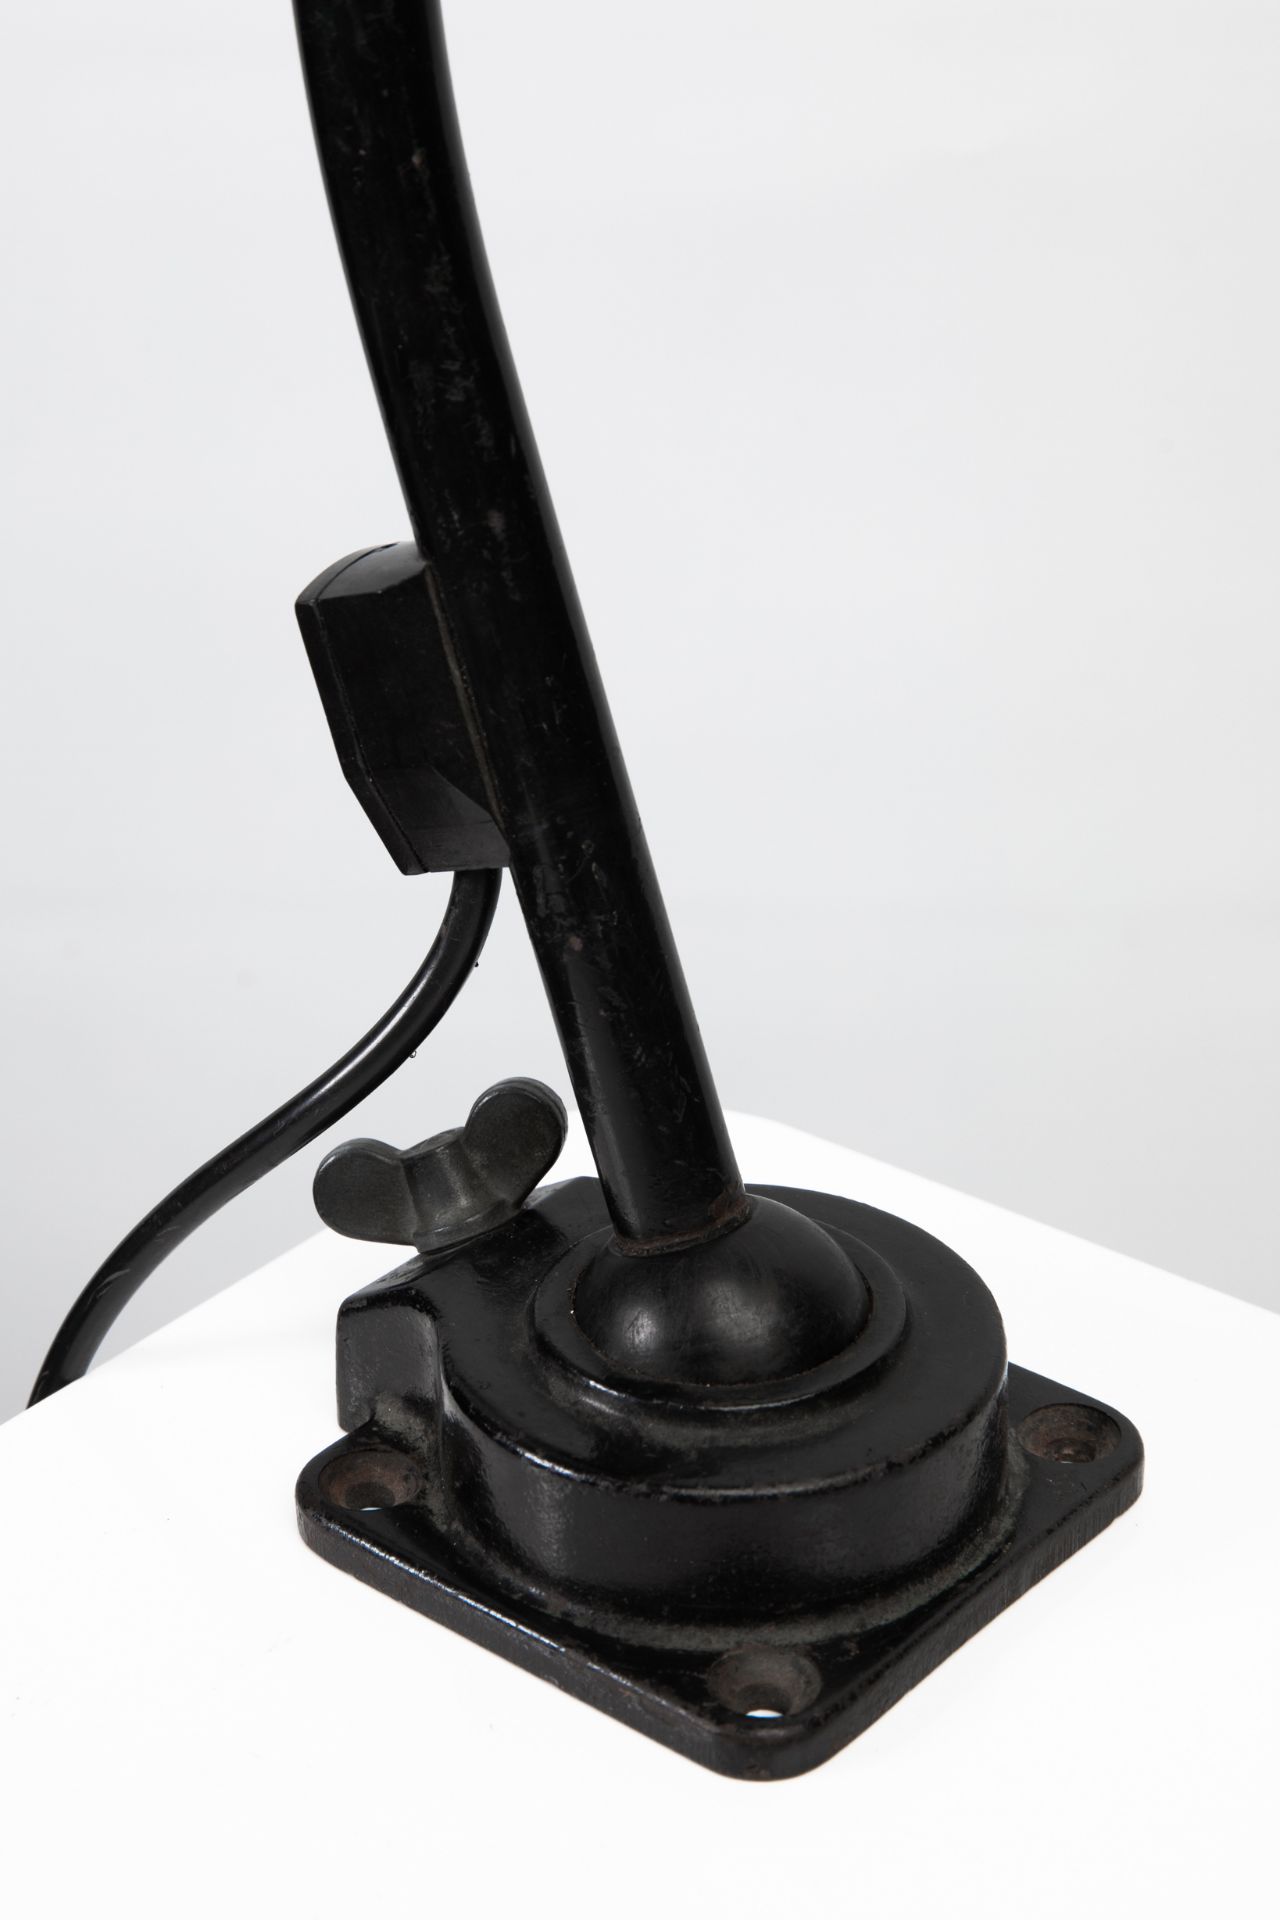 Kandem, Desk / Working Lamp Model 745 - Image 2 of 3